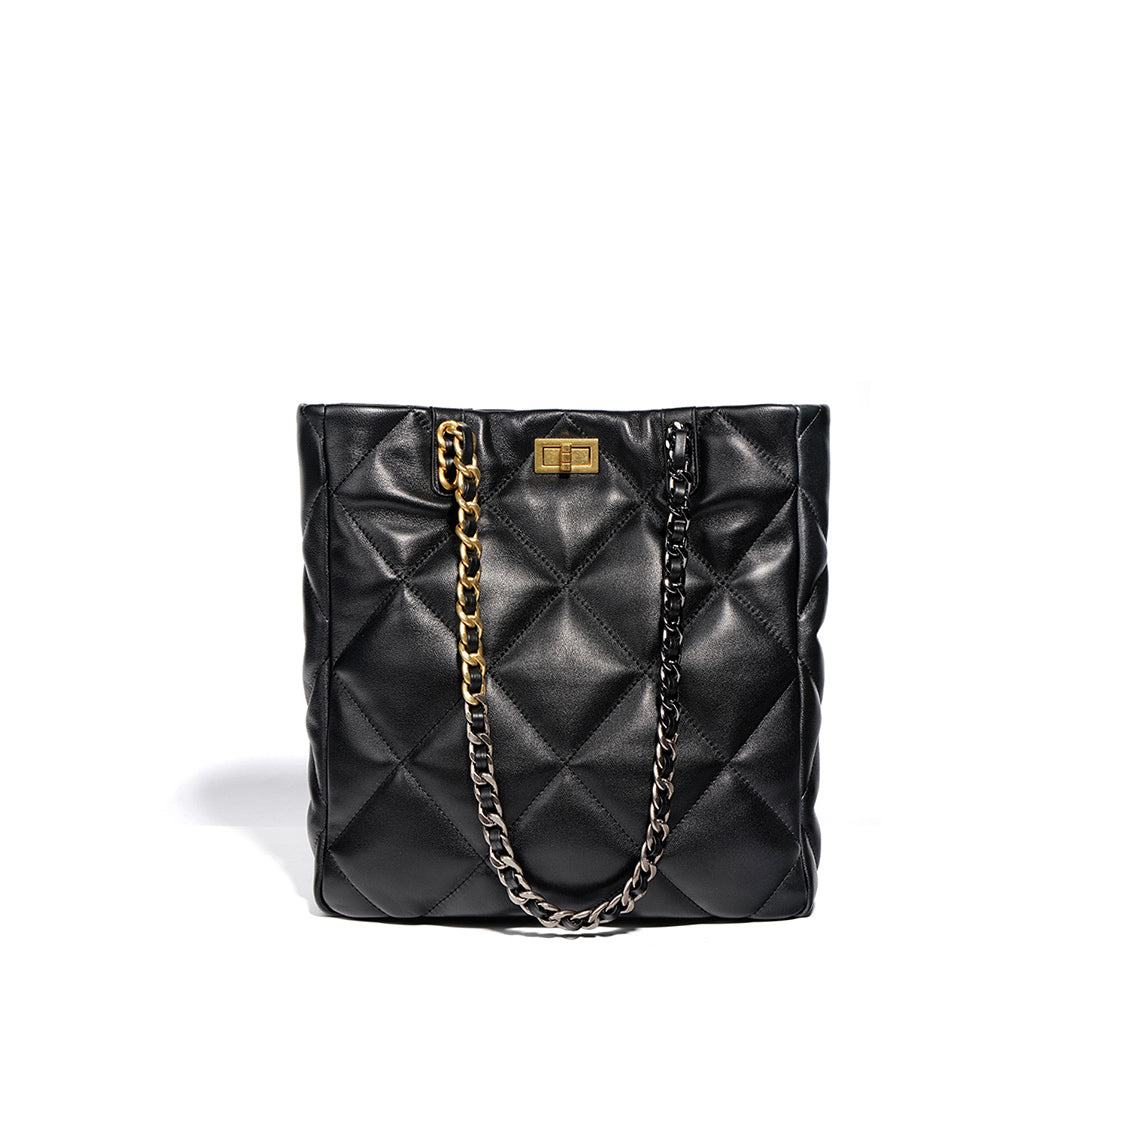 Shoulder Bags 11.8in/30cm, Gold Toned Hardware Bag For Women